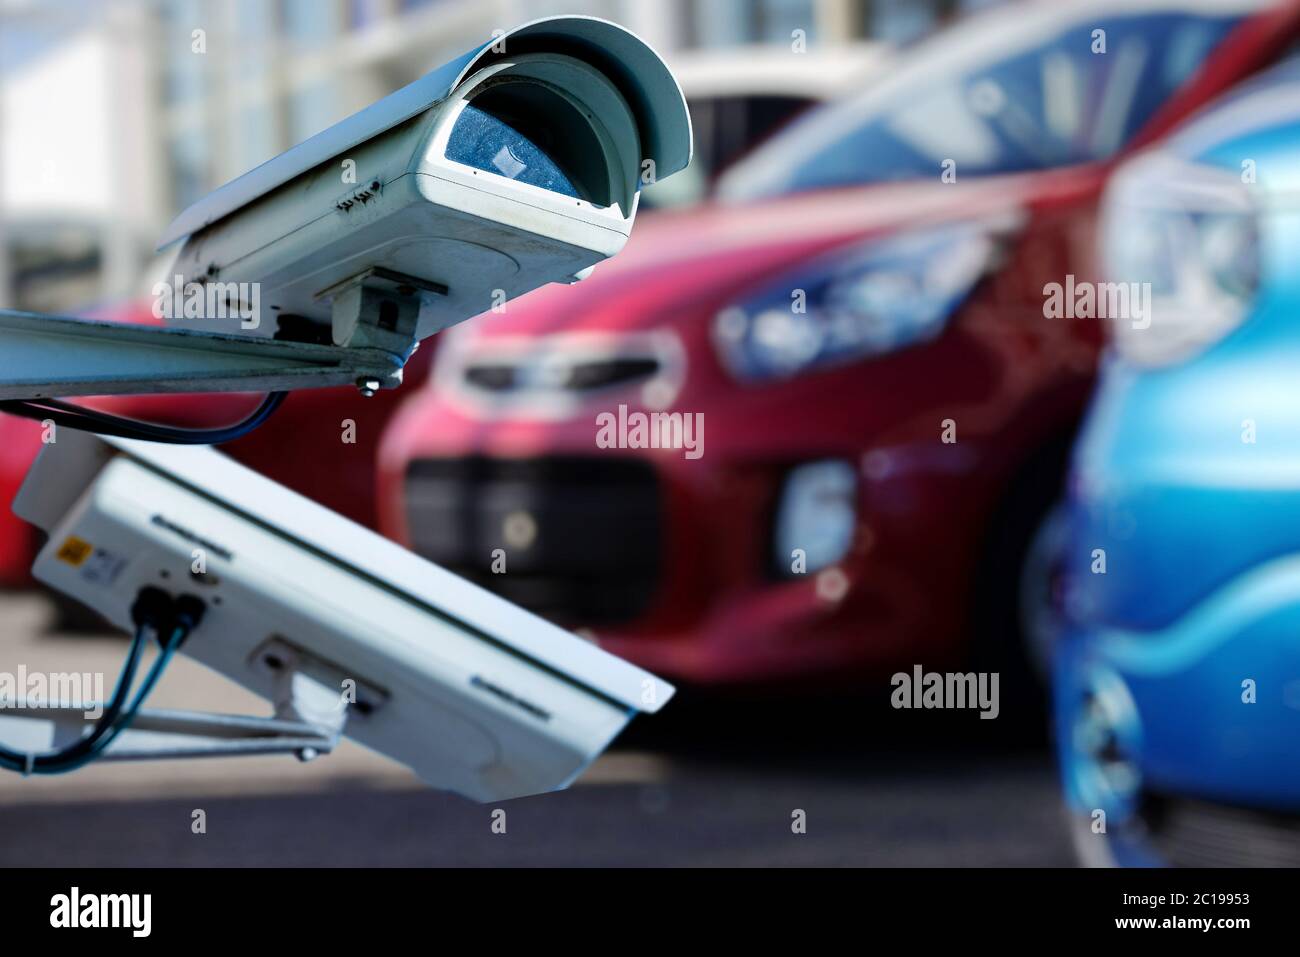 Caméra de vidéosurveillance ou système de surveillance pour la surveillance des concessionnaires automobiles Banque D'Images